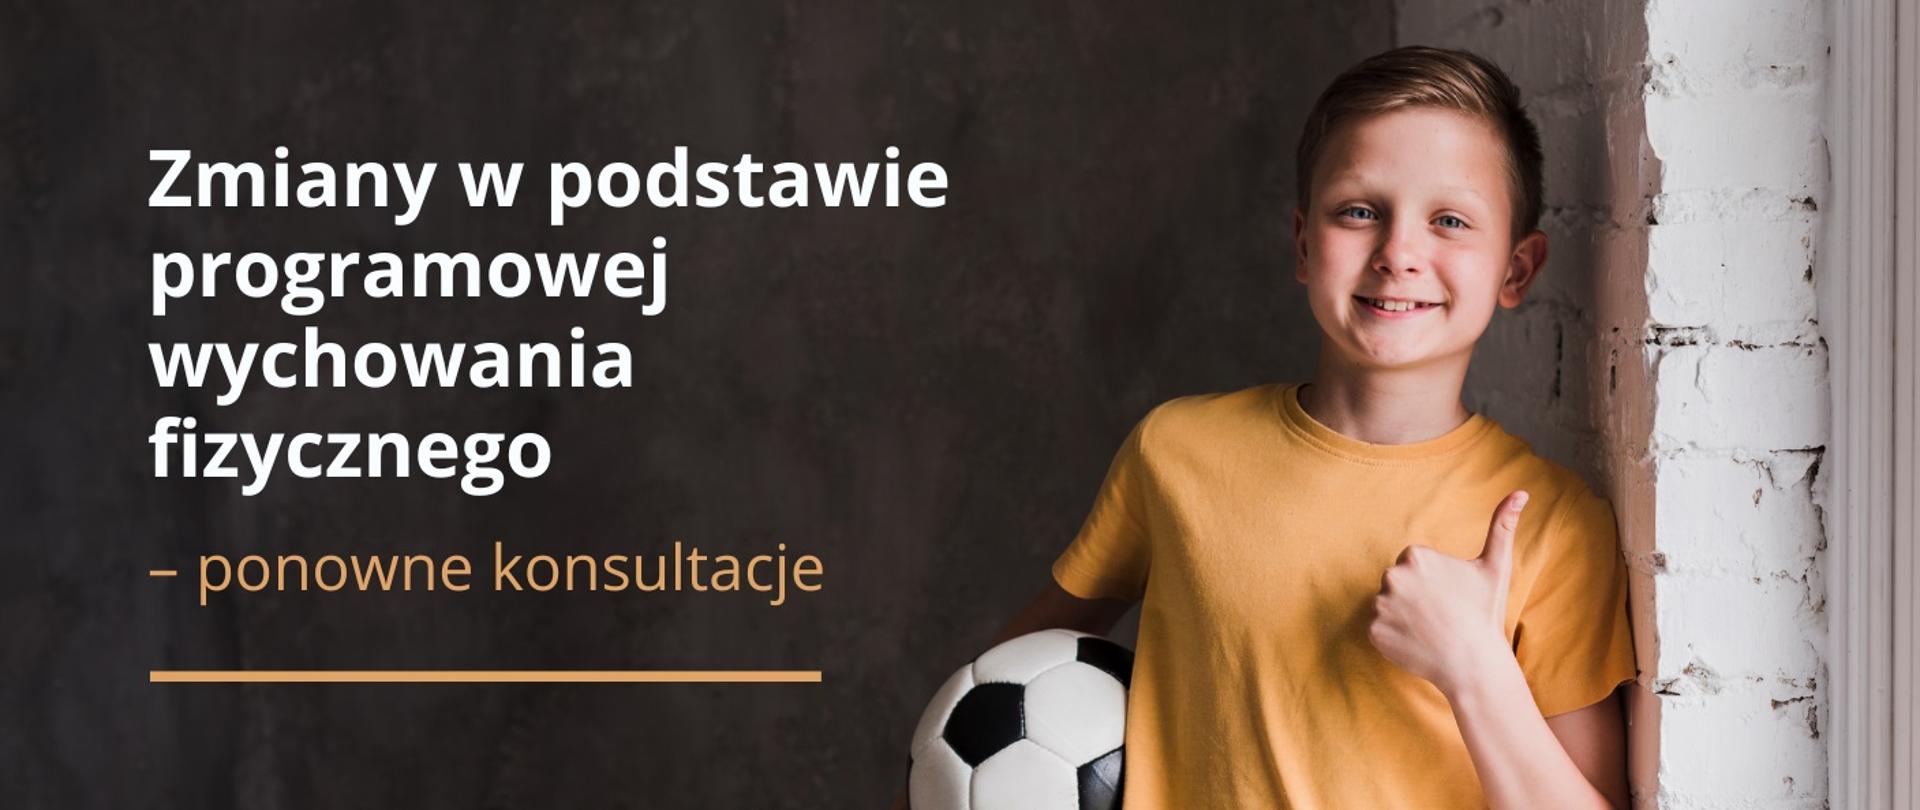 Grafika - uśmiechnięty chłopiec w żółtej koszulce trzyma w ręku piłkę nożną, obok napis Zmiany w podstawie programowej wychowania fizycznego – ponowne konsultacje.